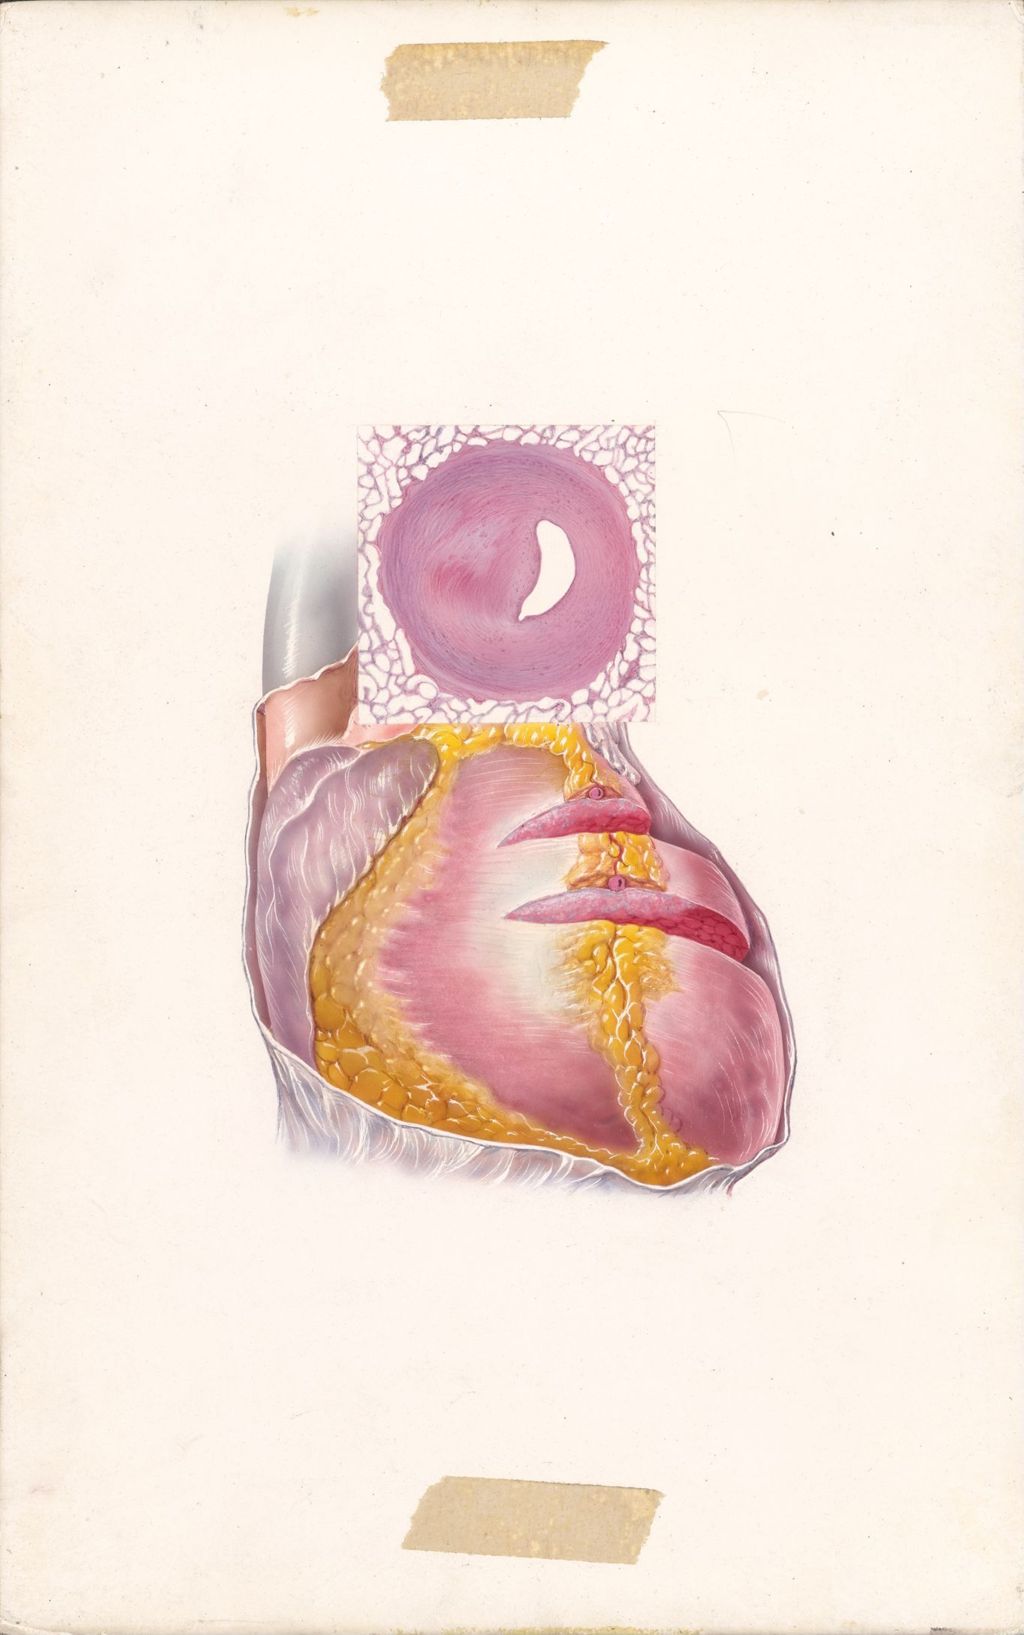 Edema of Cardiac Origin, Arteriosclerotic Heart Disease